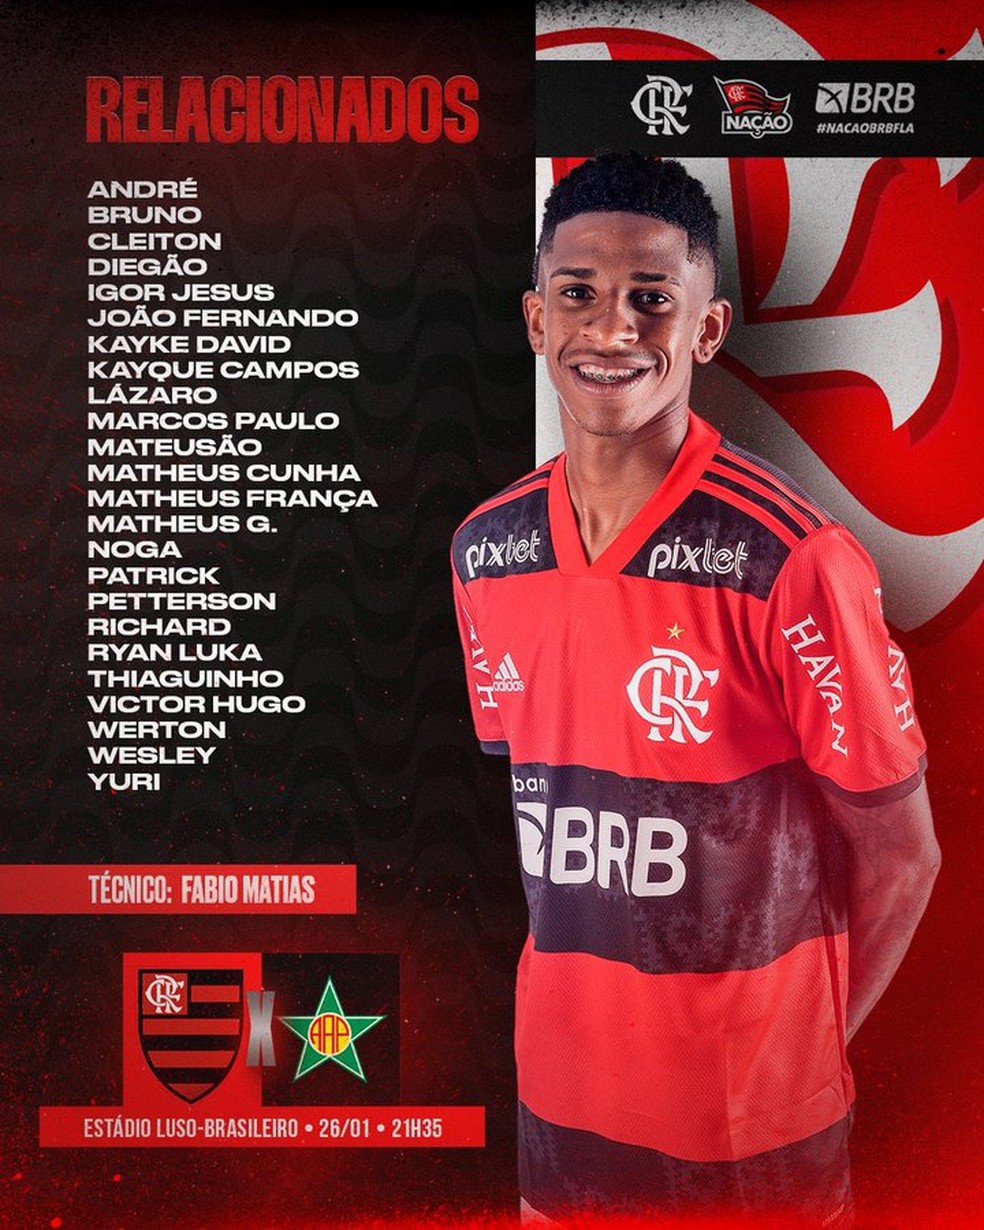 Confira os relacionados do Flamengo; André é o destaque da imagem divulgada pelo clube — Foto: Divulgação/Flamengo